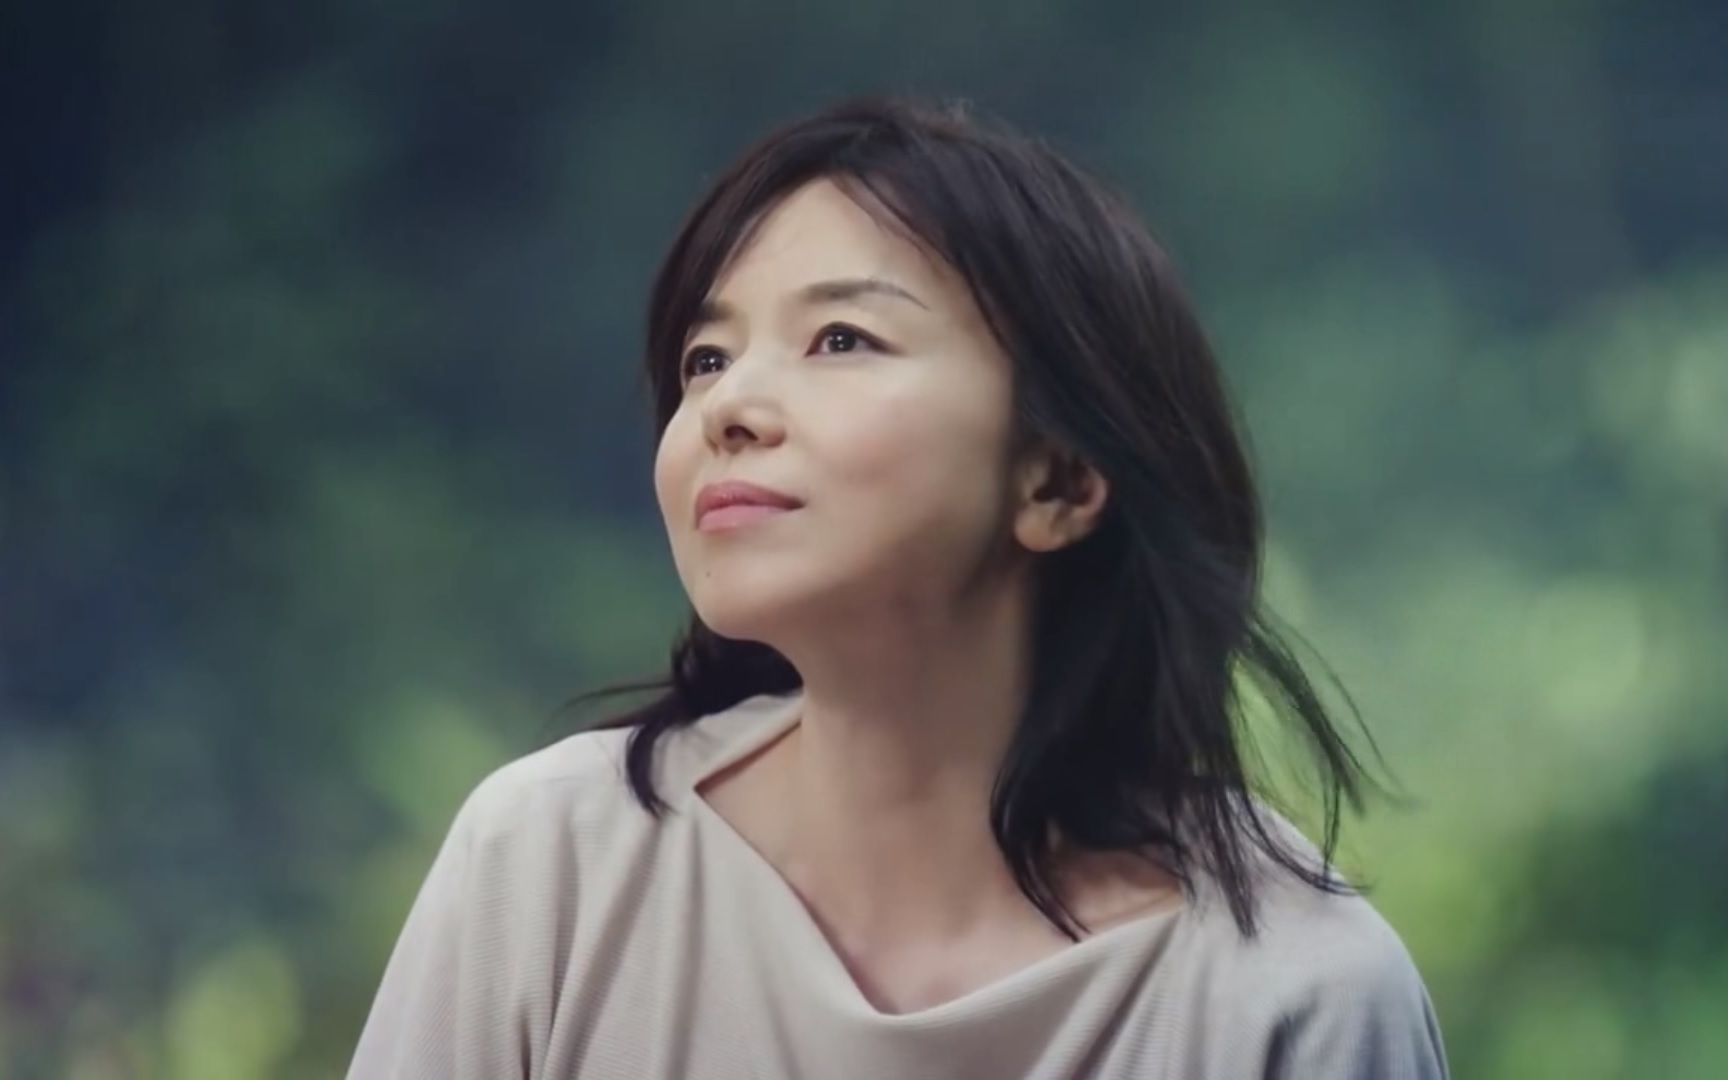 【日本广告】山口智子 lits「力量在自己心中」合集篇